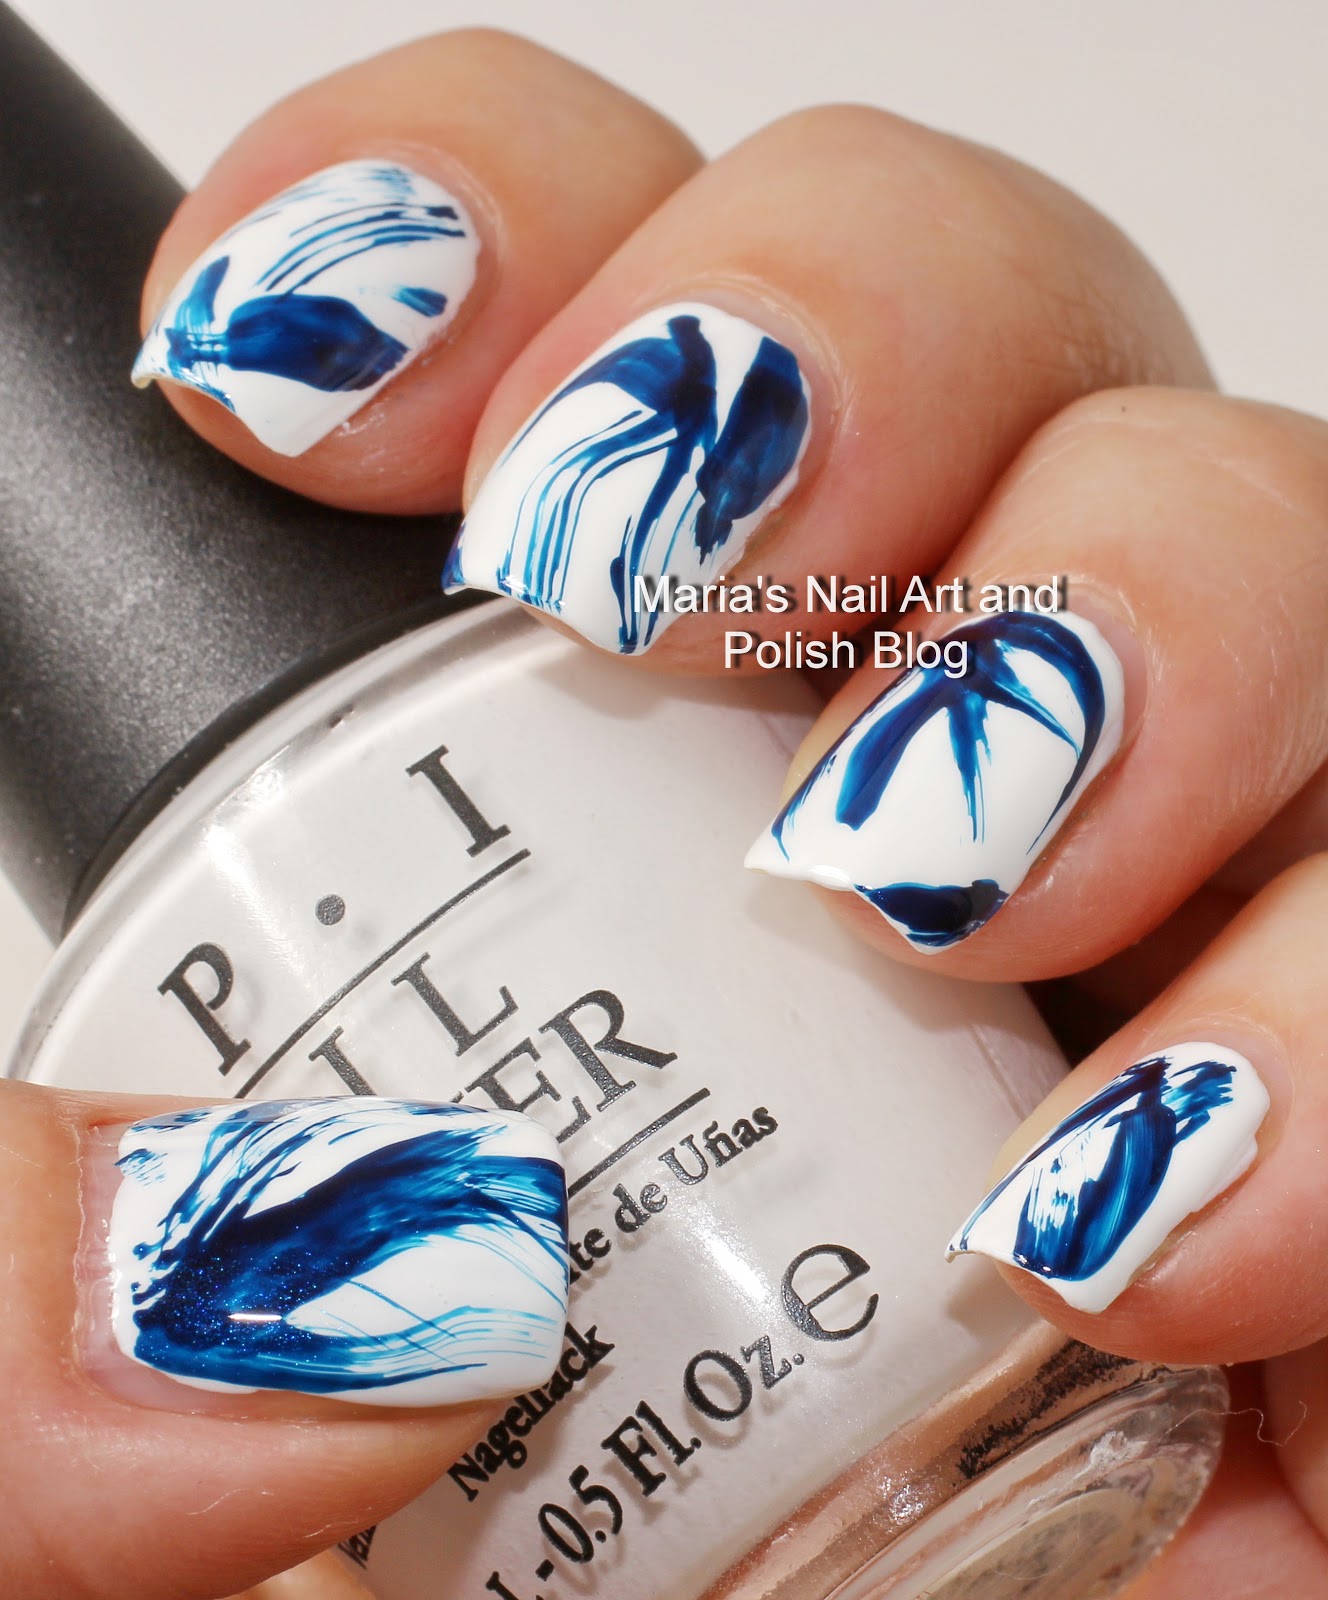 Marias Nail Art and Polish Blog: Blue and white brush stroke nail art